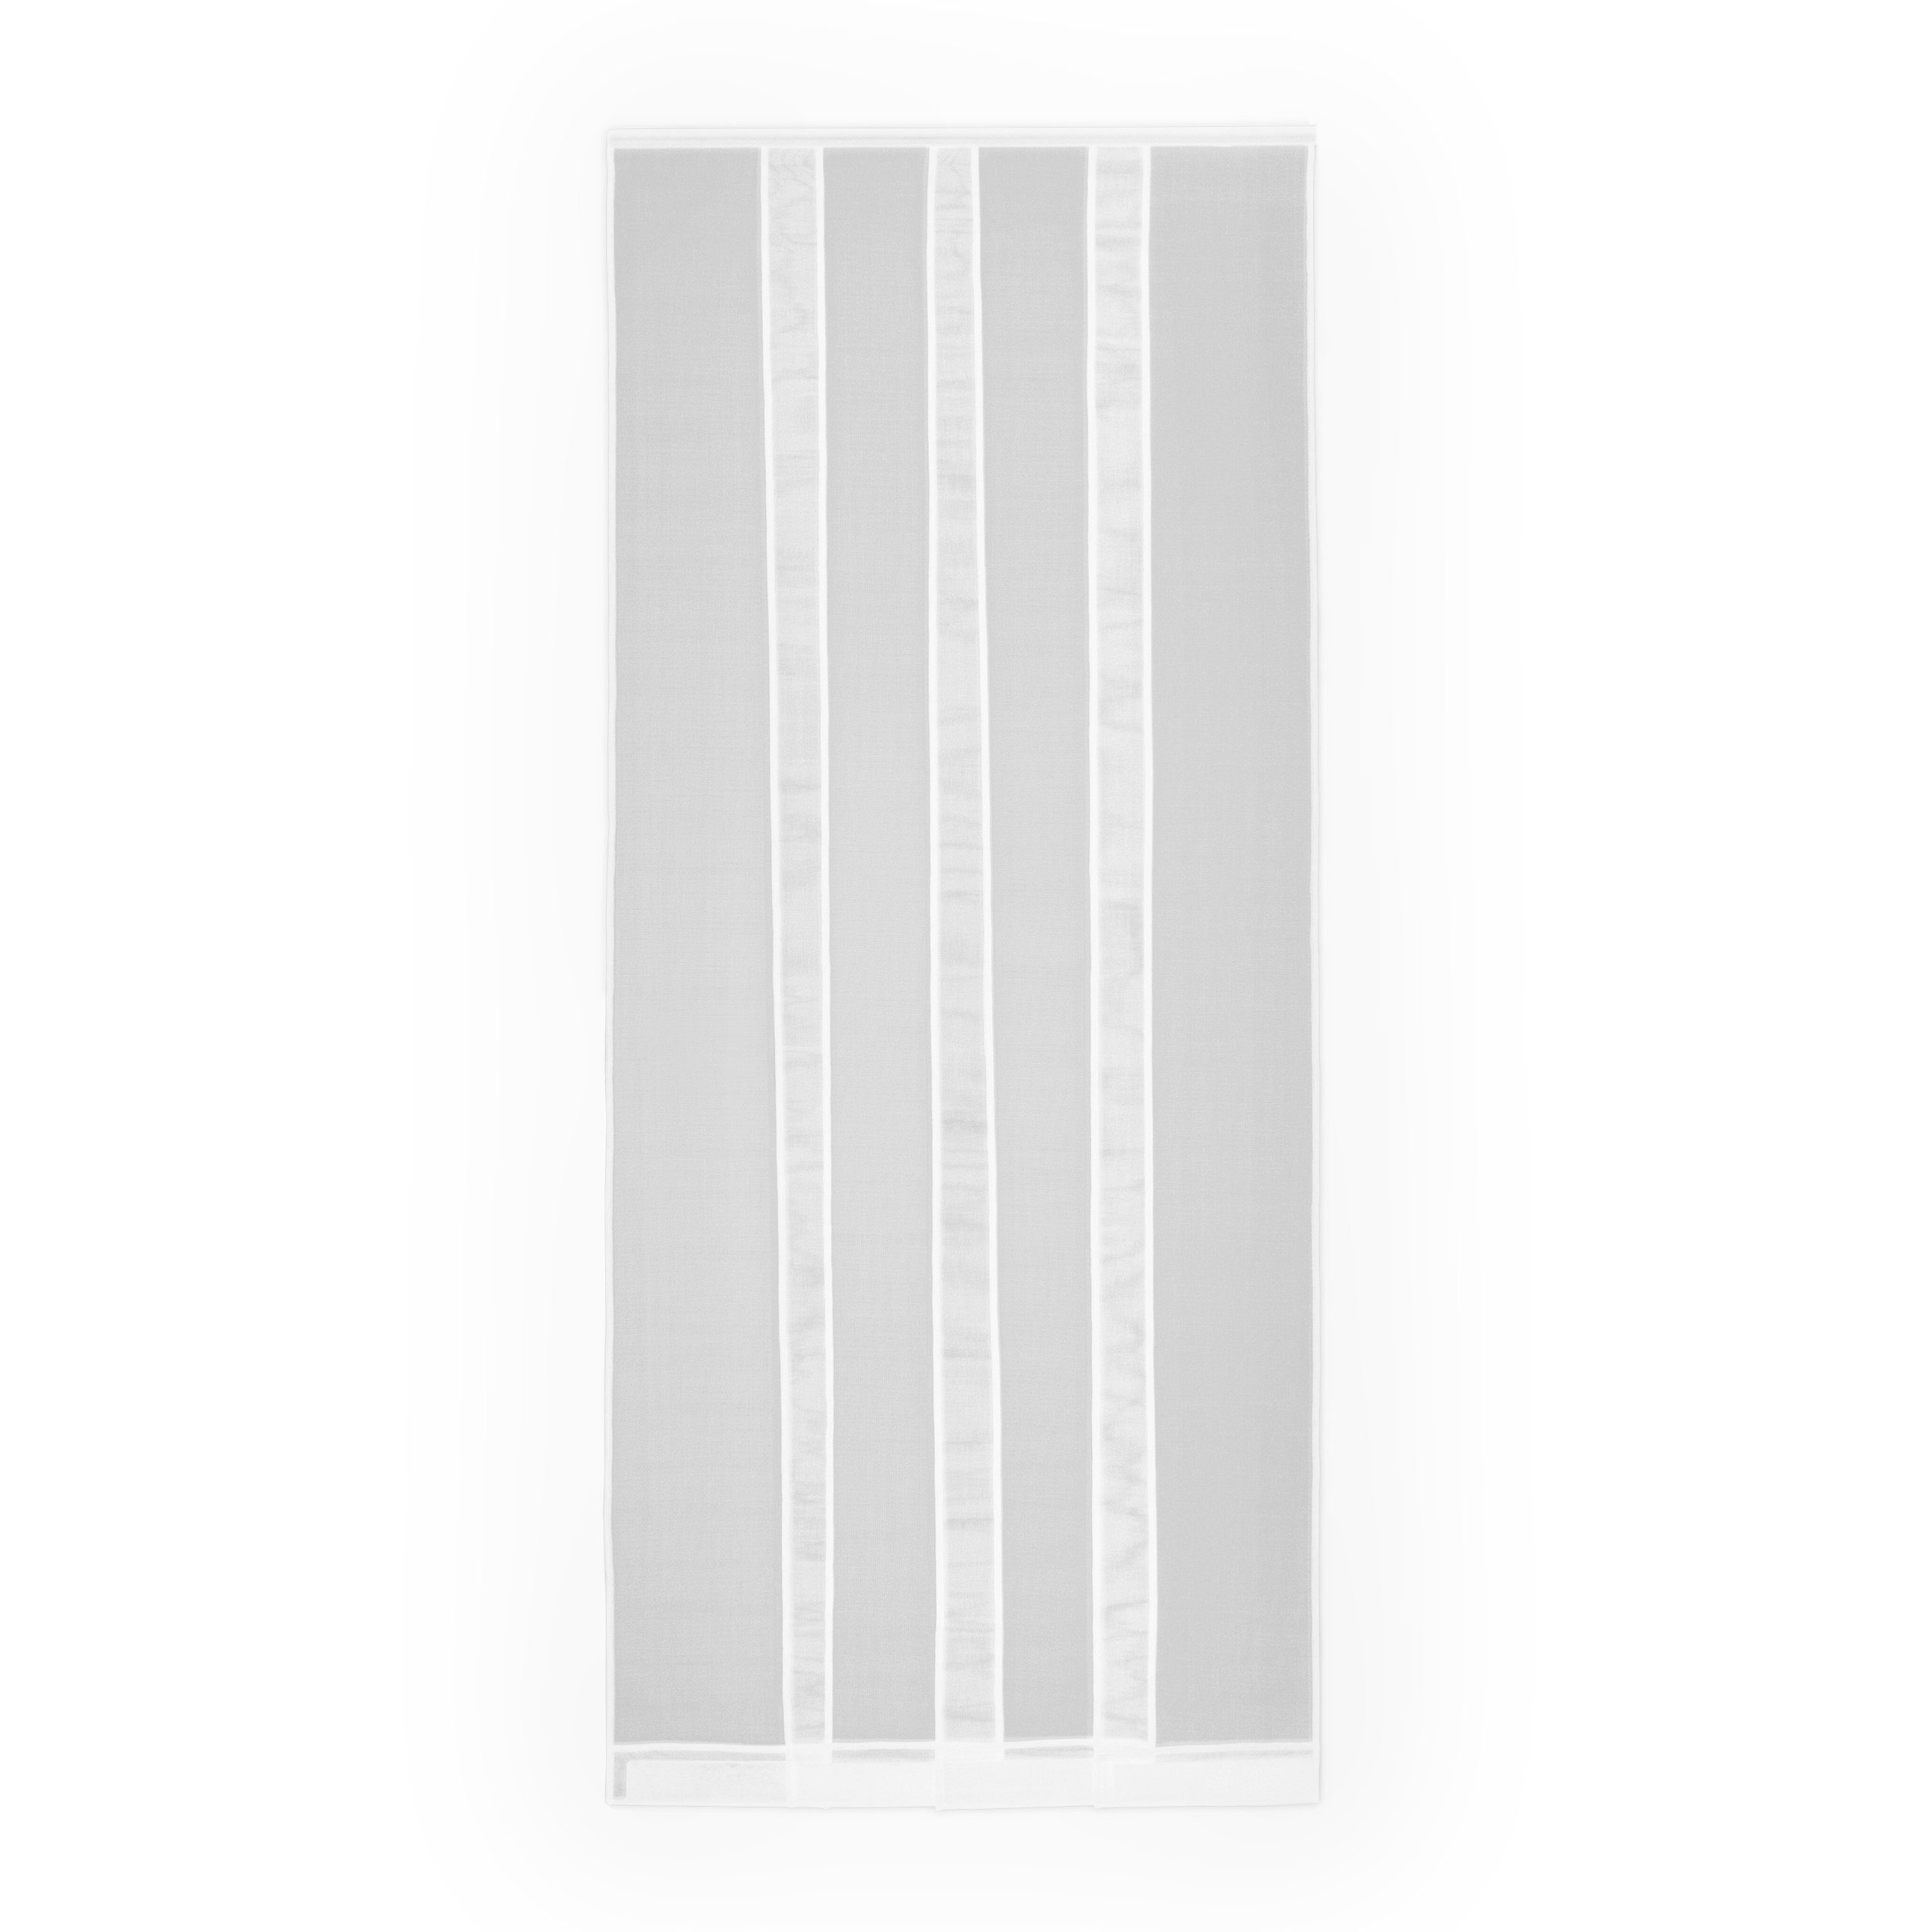 APANA Insektenschutz-Vorhang Lamellenvorhang Vorhang Fliegengitter Insektenschutz Tür Mückenschutz, Größe (Breite x Höhe):100 x 220 cm